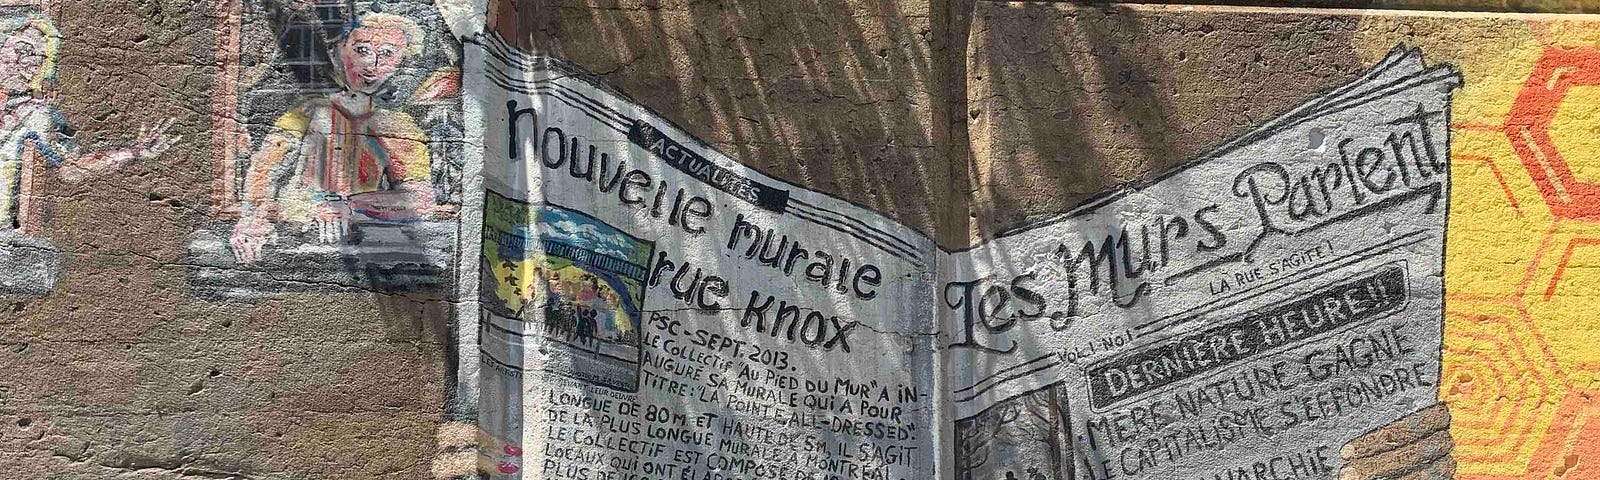 Œuvre murale sur laquelle un personnage tient un journal titrant, entre autres, « Nouvelle murale rue Knox » et « Les murs parlent ».